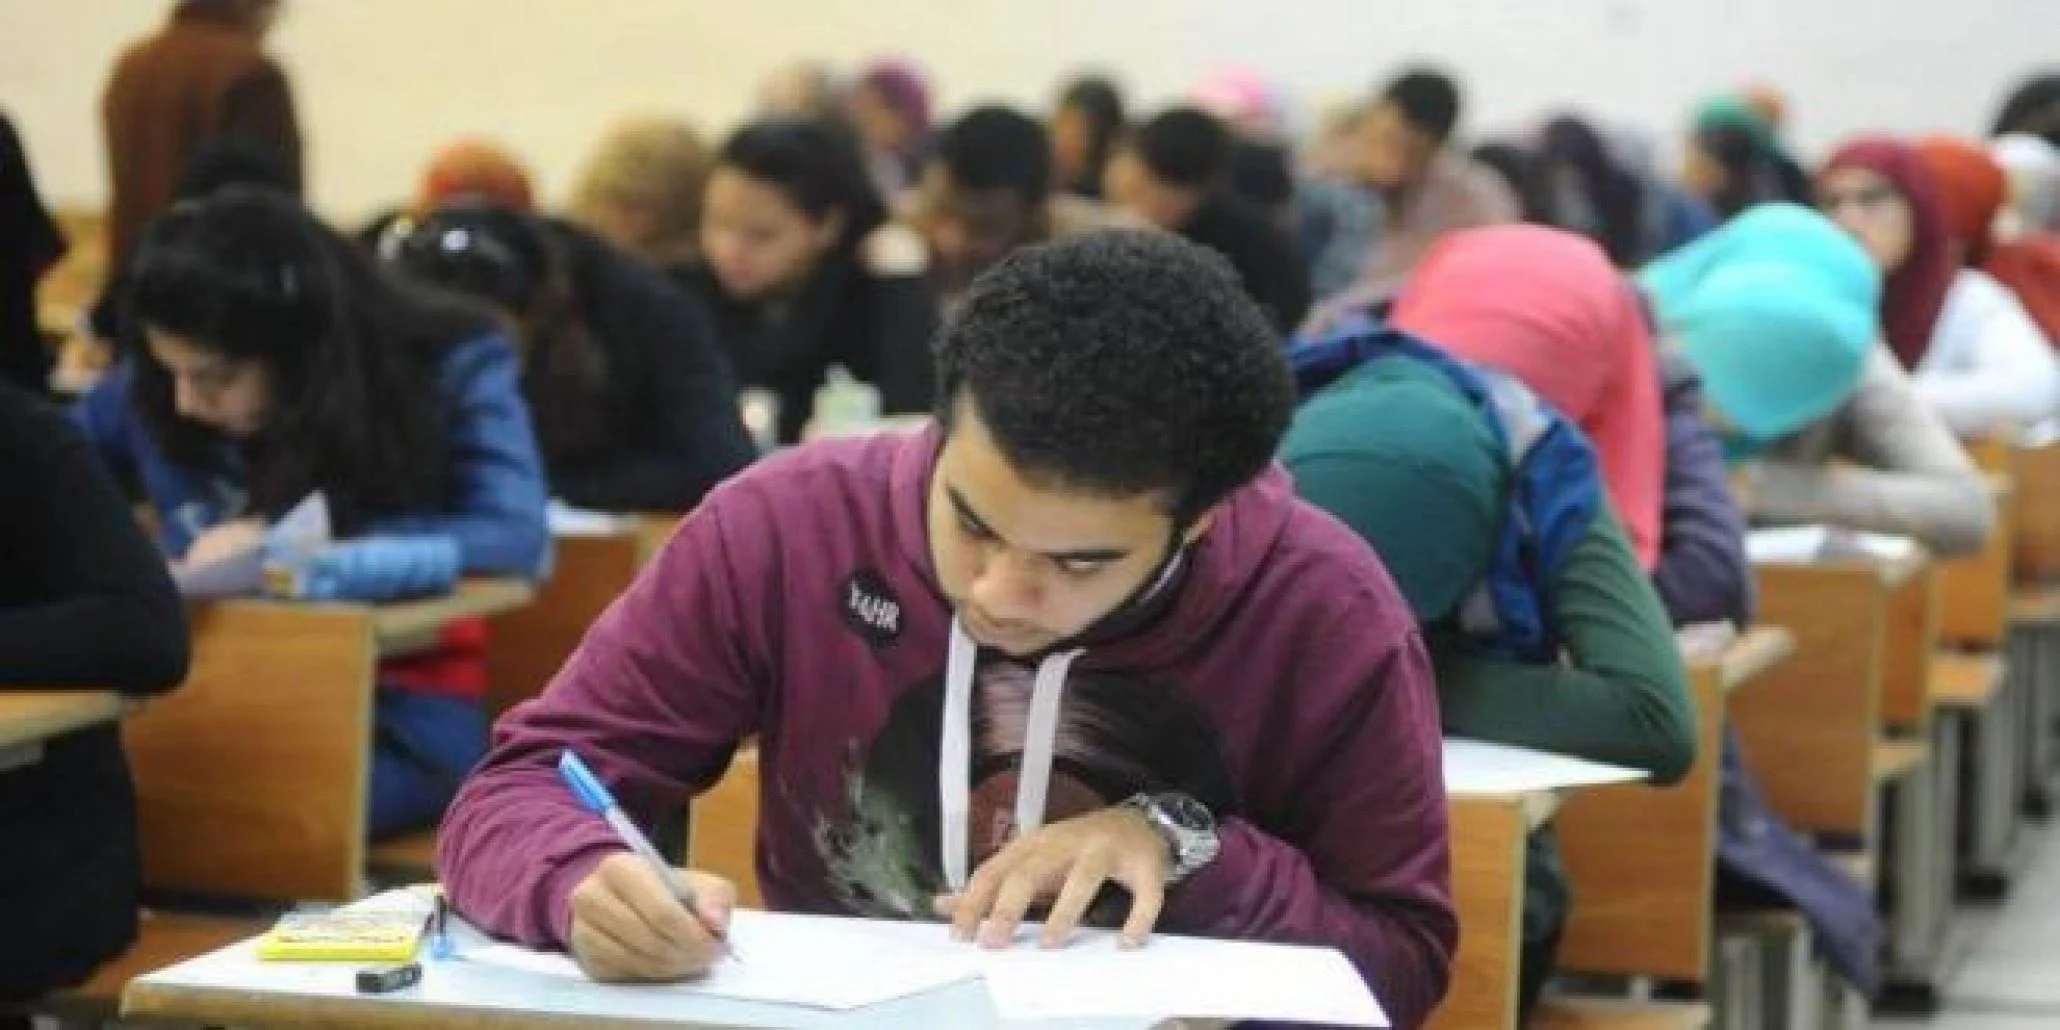 جدول امتحانات شهر اكتوبر للصف السادس الابتدائي 2022 المُعلن من وزارة التربية والتعليم